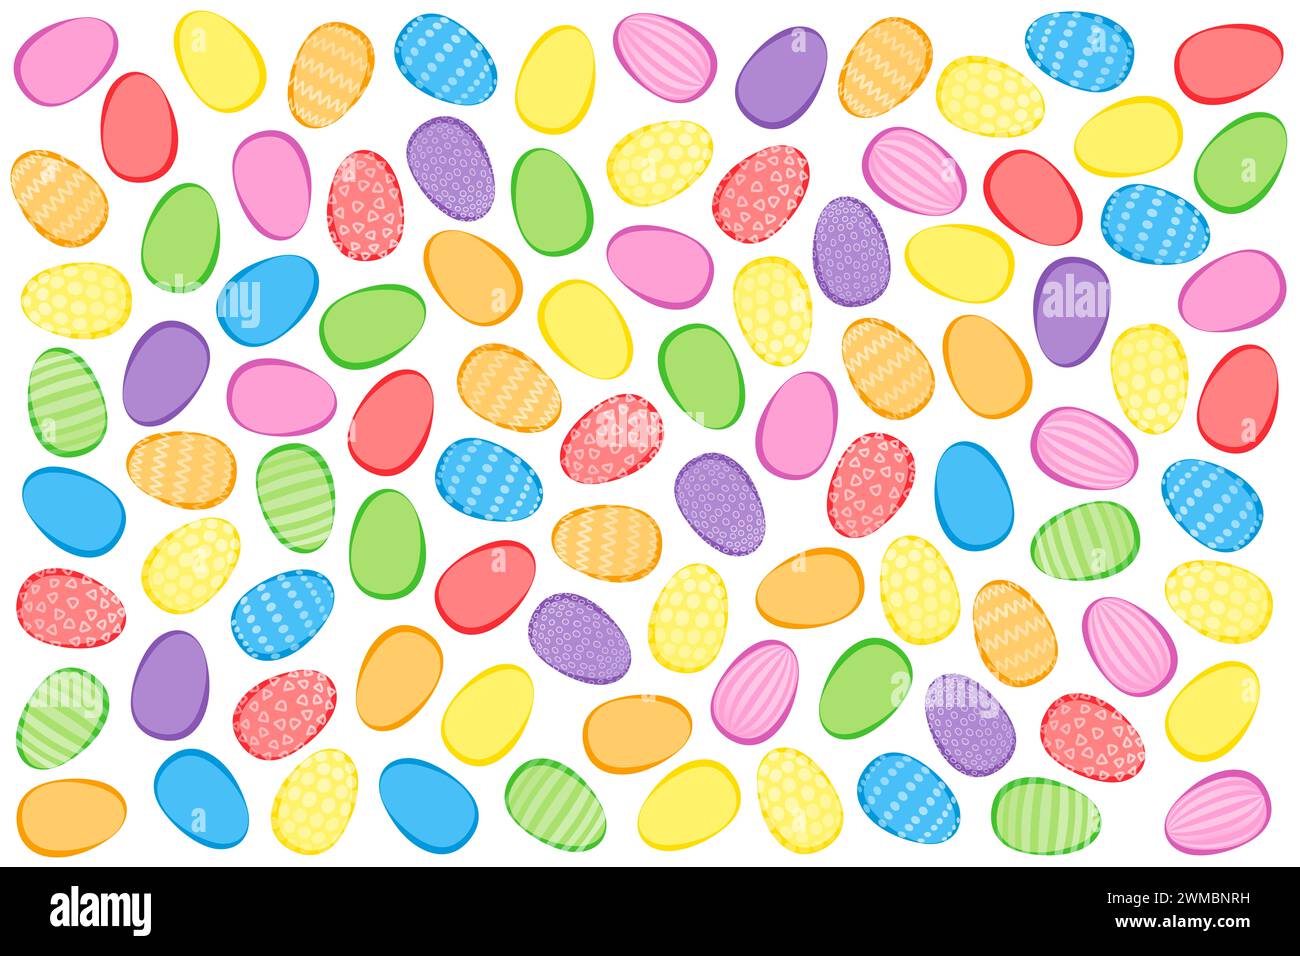 Fond coloré d'oeufs de Pâques. Nombreux œufs de pâques, de couleurs vives et certains avec des motifs décoratifs, entrecroisés et disposés au hasard. Banque D'Images